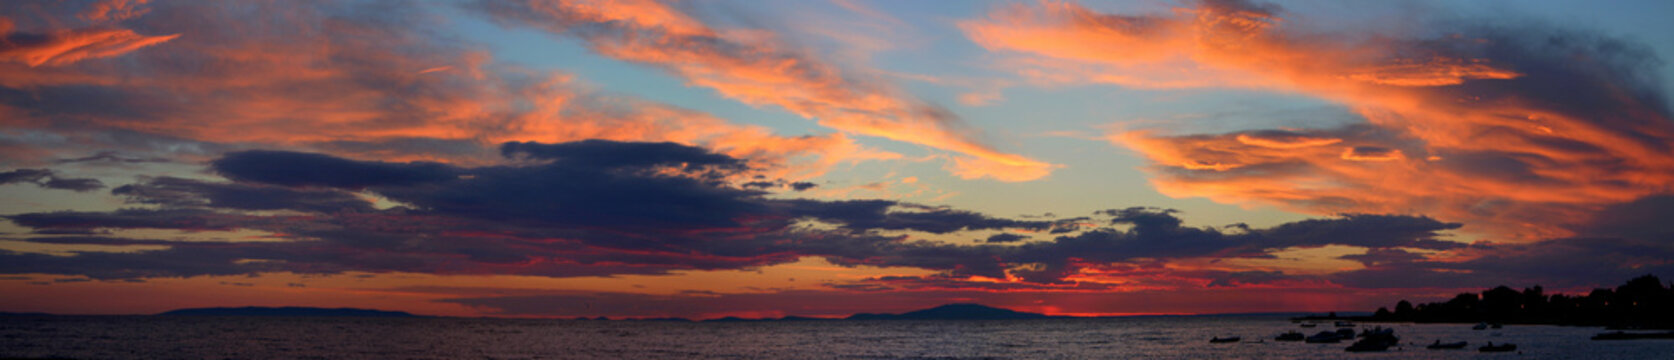 sunset between islands in croatia © xamad